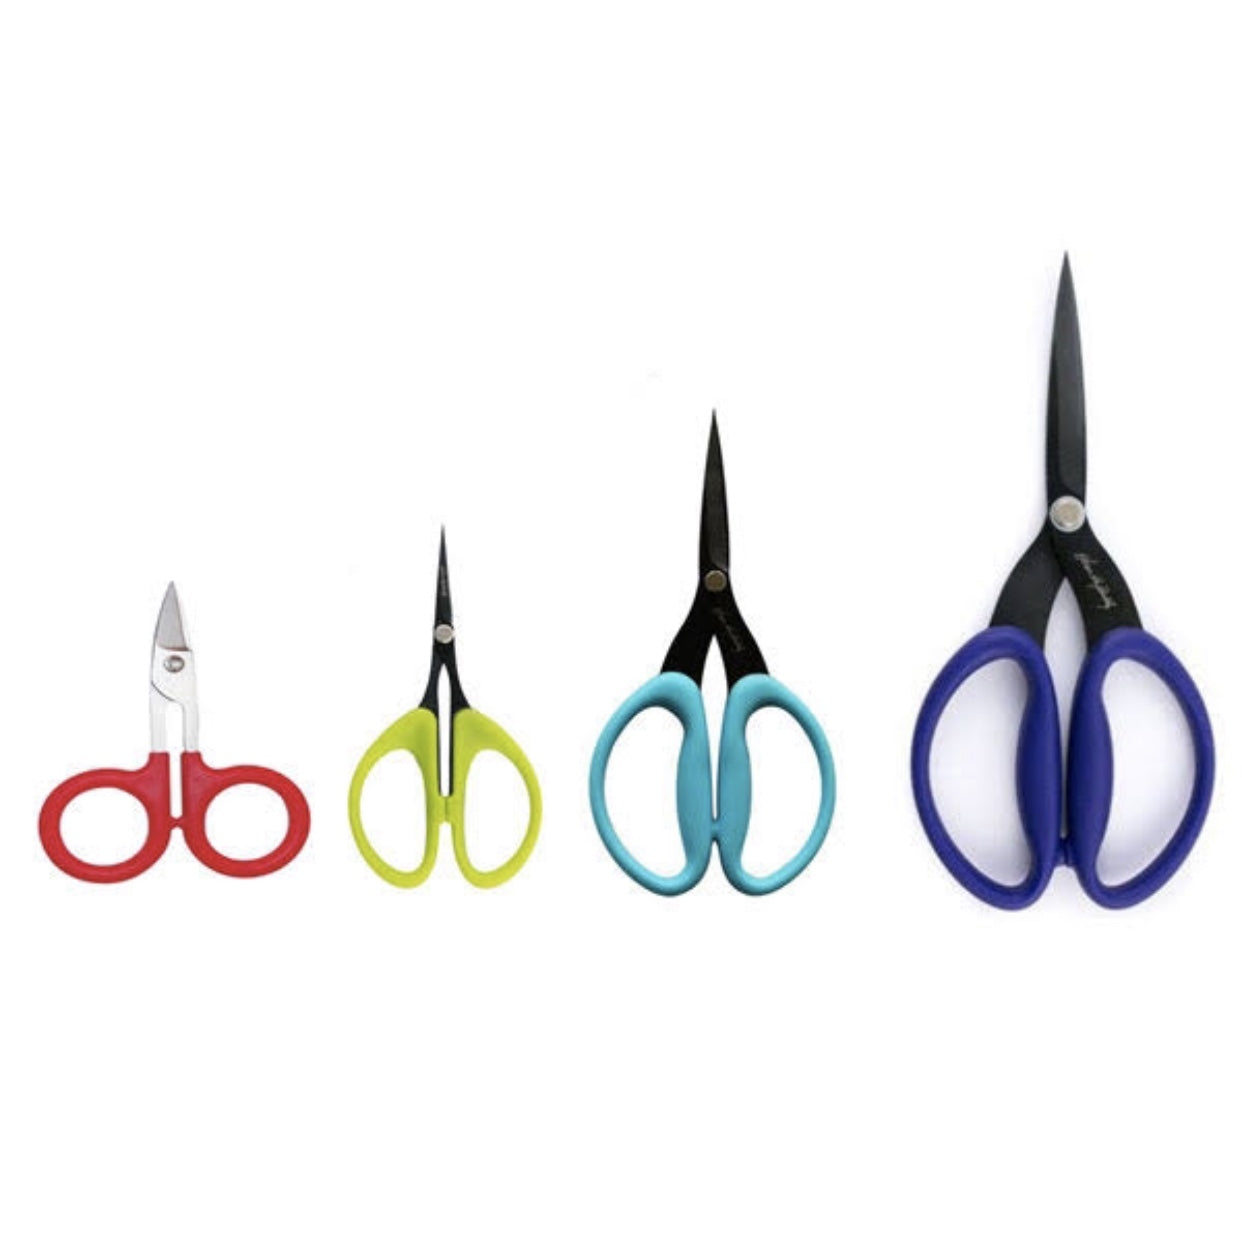 Scissors - Karen K. Buckley Perfect Scissors - Large 7 1/2 - Purple